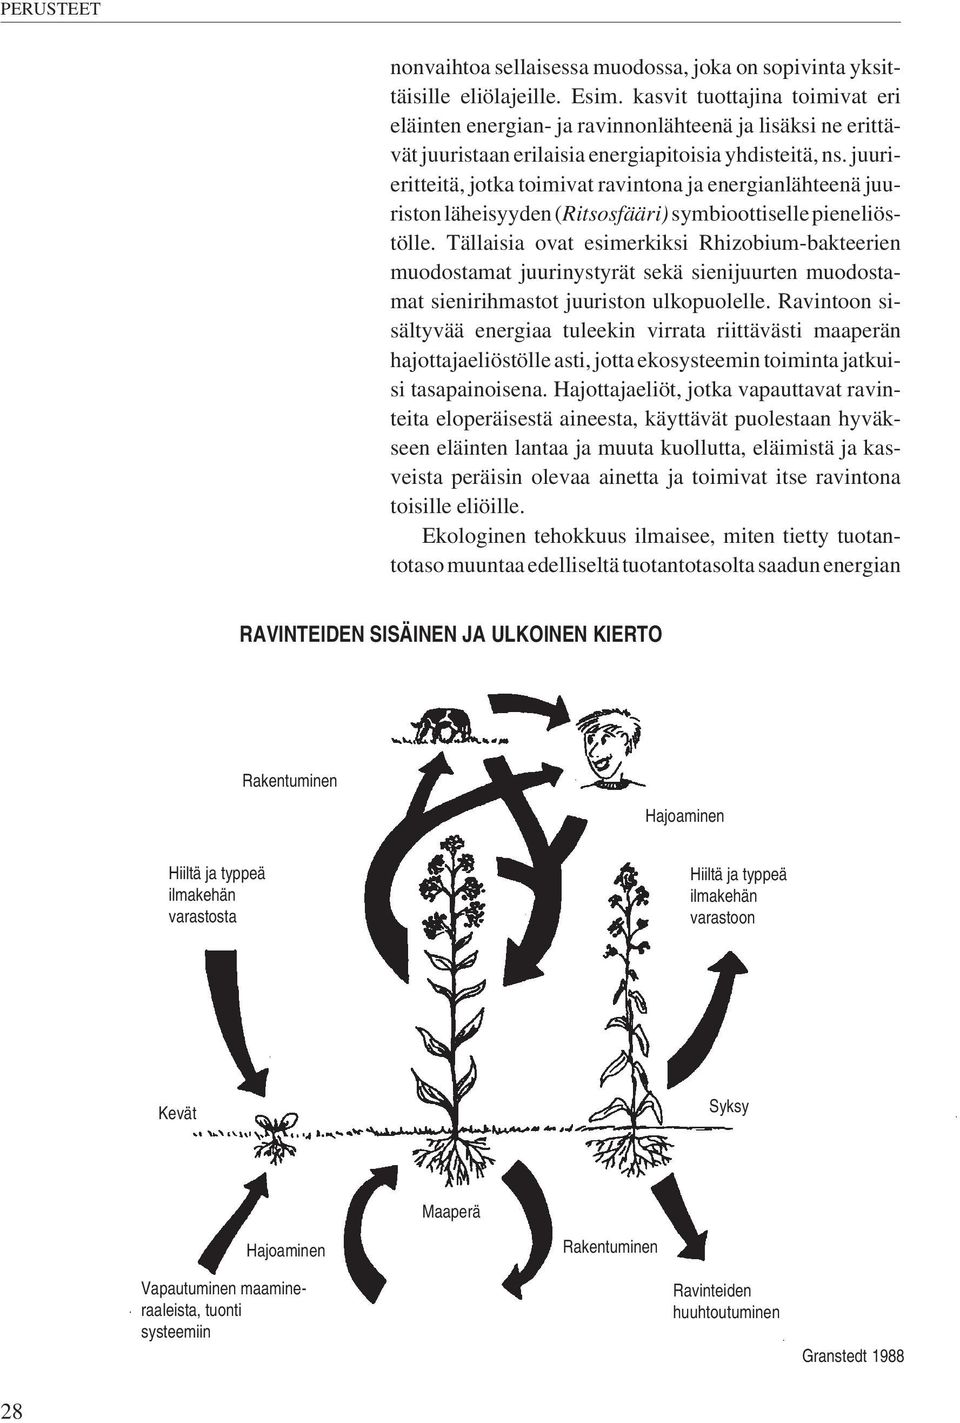 juurieritteitä, jotka toimivat ravintona ja energianlähteenä juuriston läheisyyden (Ritsosfääri) symbioottiselle pieneliöstölle.